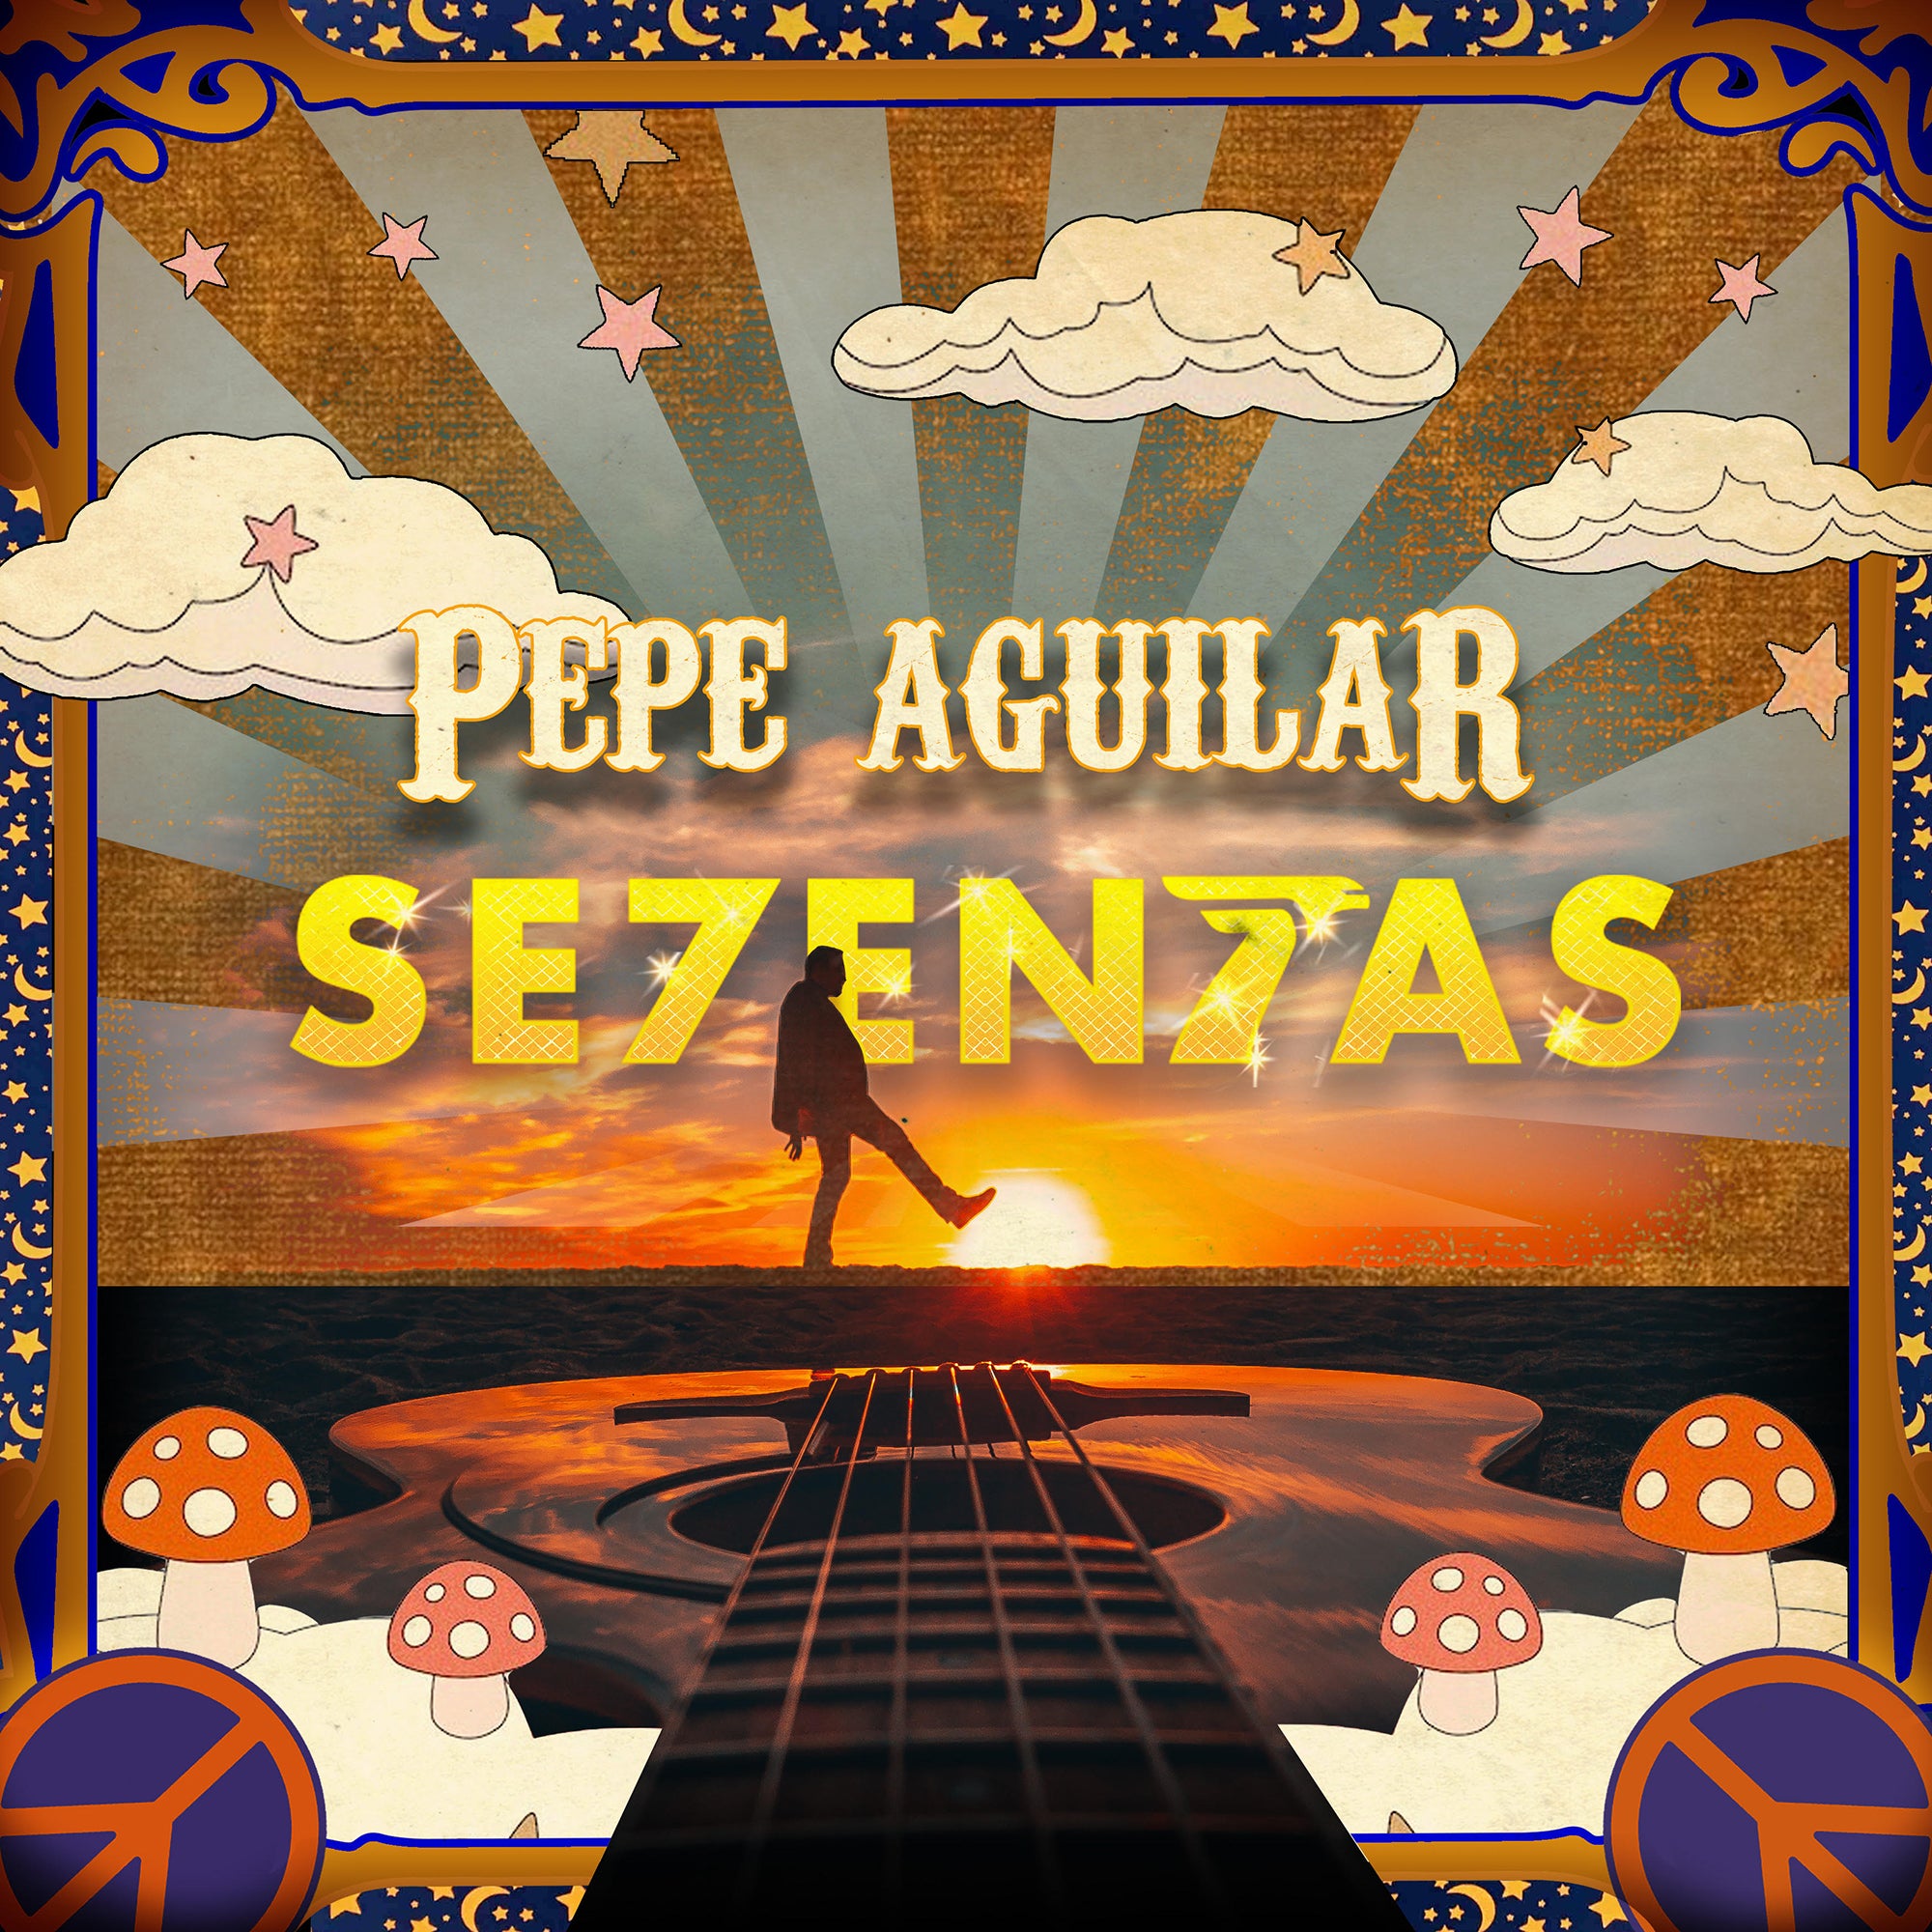 Pepe Aguilar - "Se7entas" CD